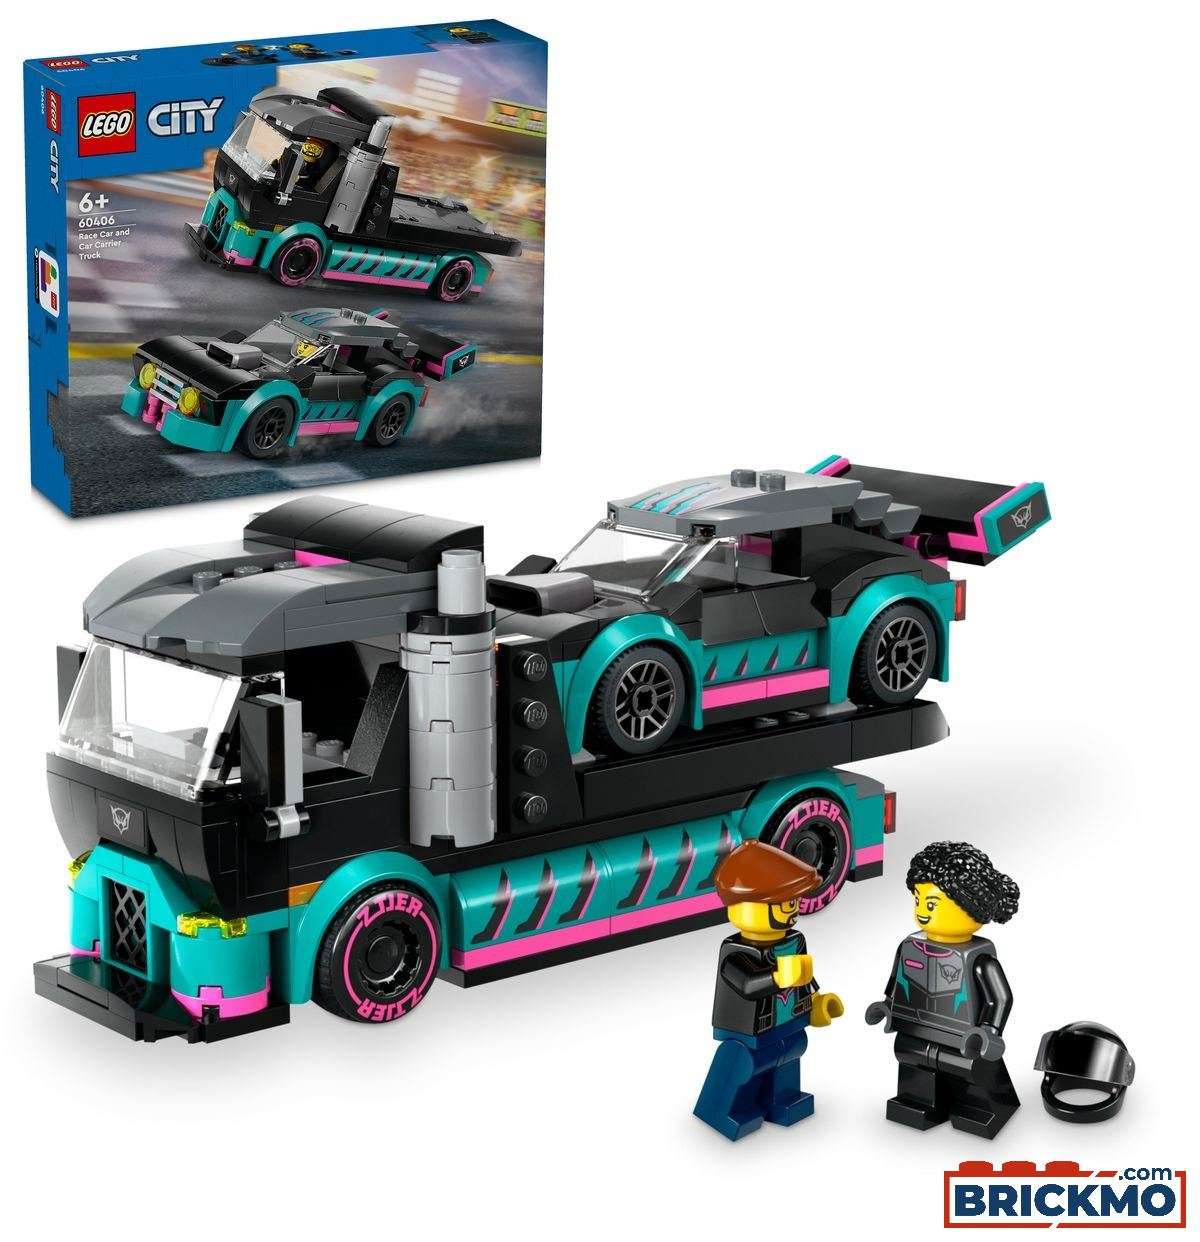 LEGO City 60406 Samochód wyścigowy i laweta 60406